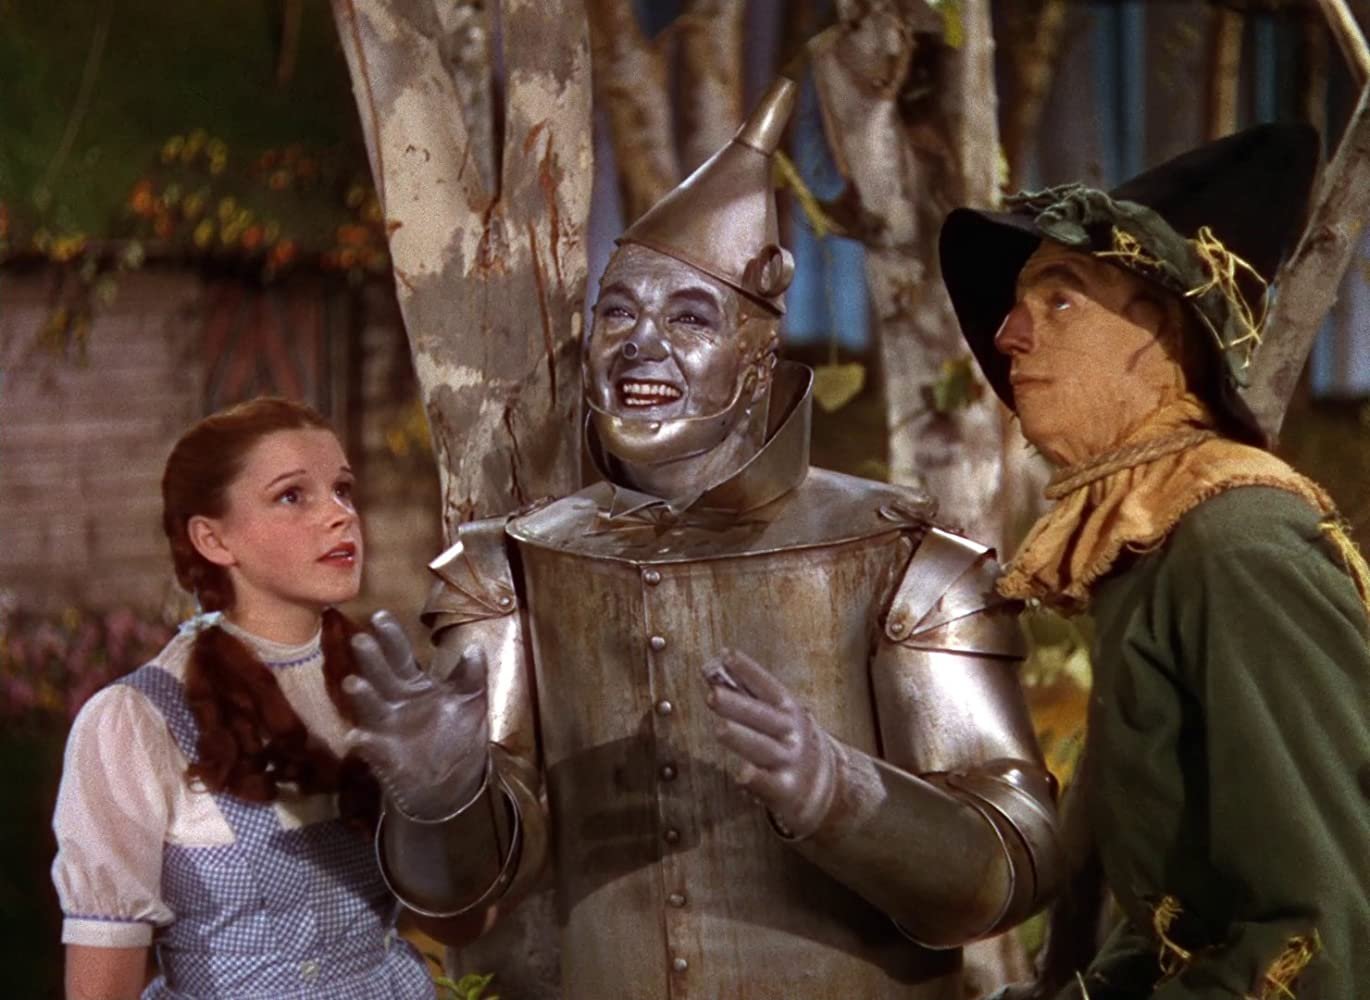 Wizard of Oz fiolen kan få högt bud